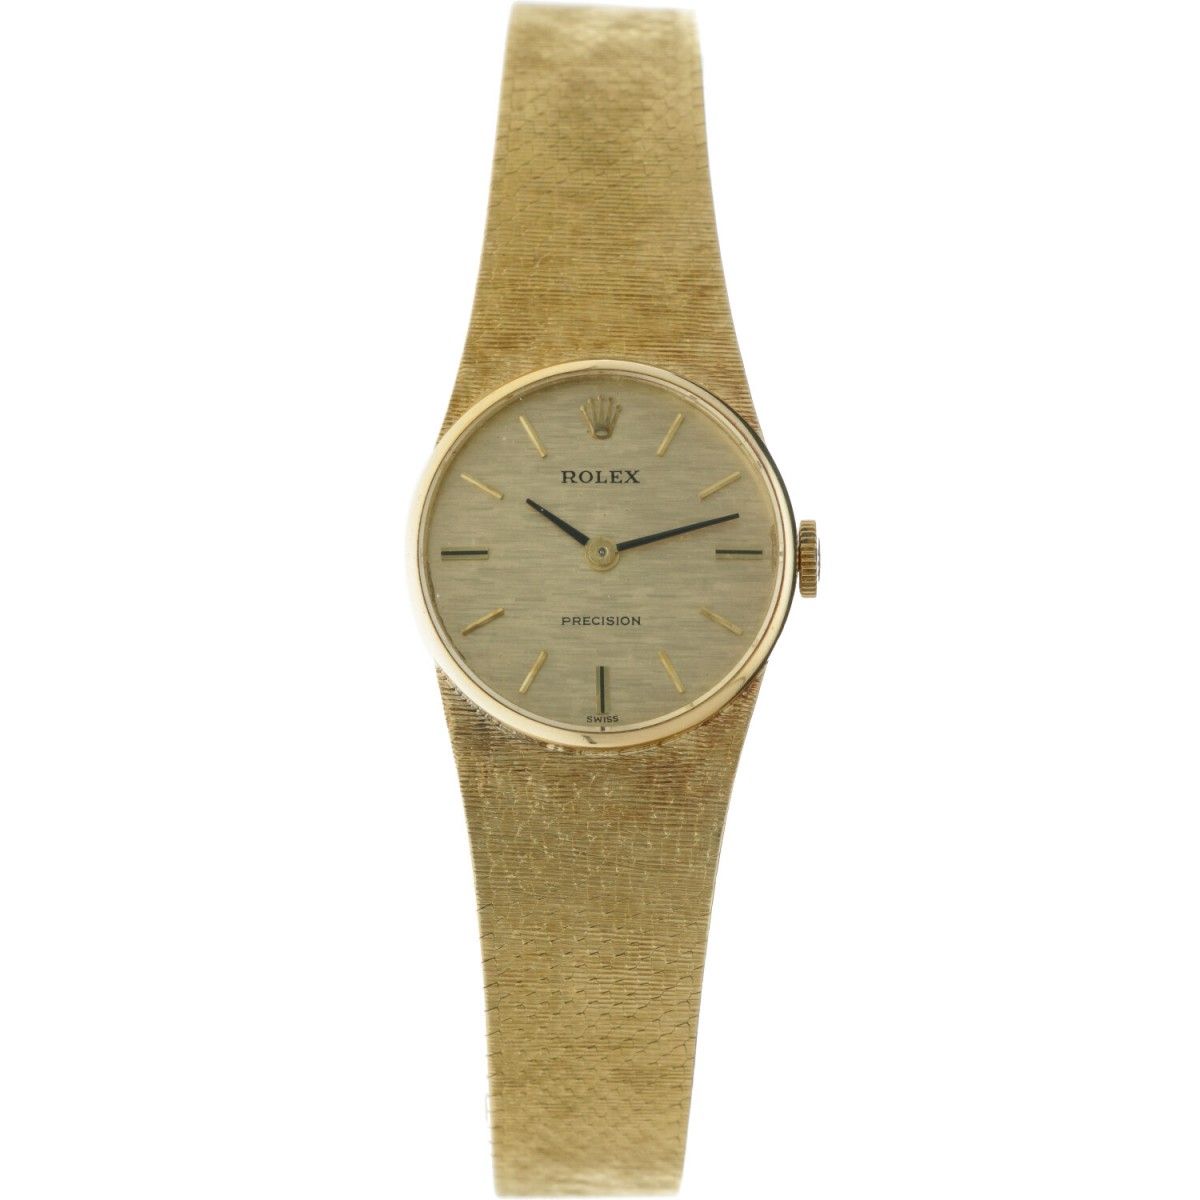 Rolex Precision - Ladies watch - apprx. 1971. Gehäuse: Gelbgold (18 kt.) - Armba&hellip;